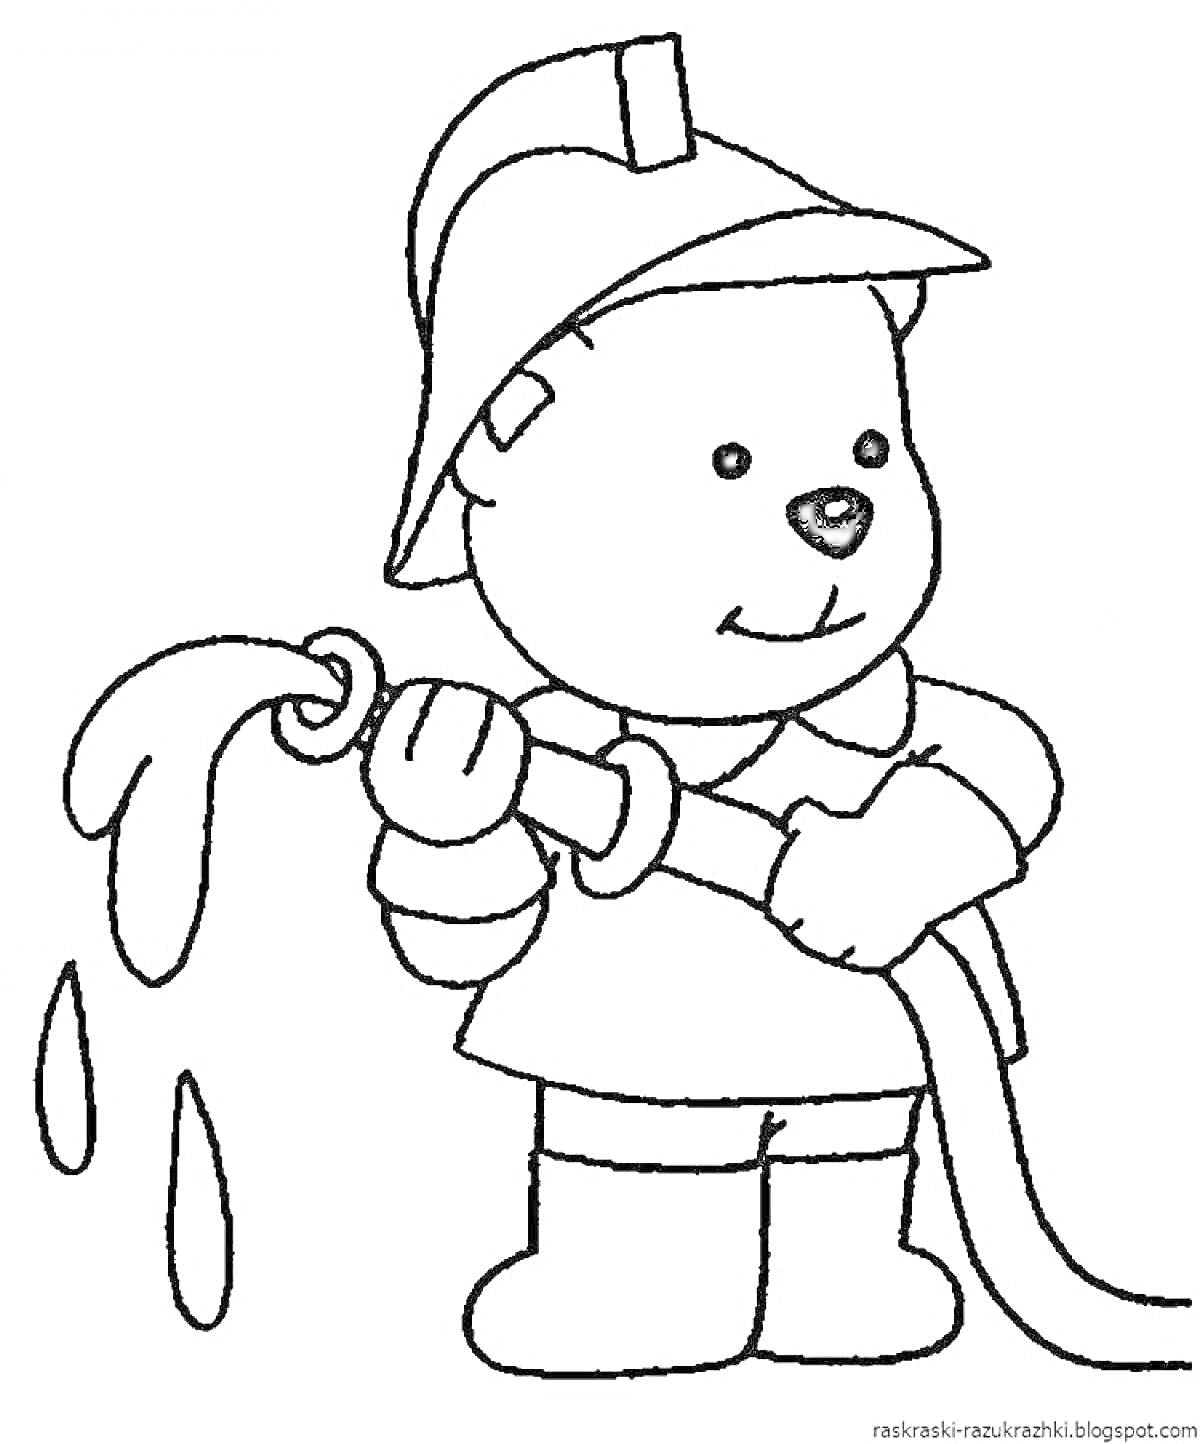 Раскраска Медвежонок-пожарный с пожарным рукавом и струей воды